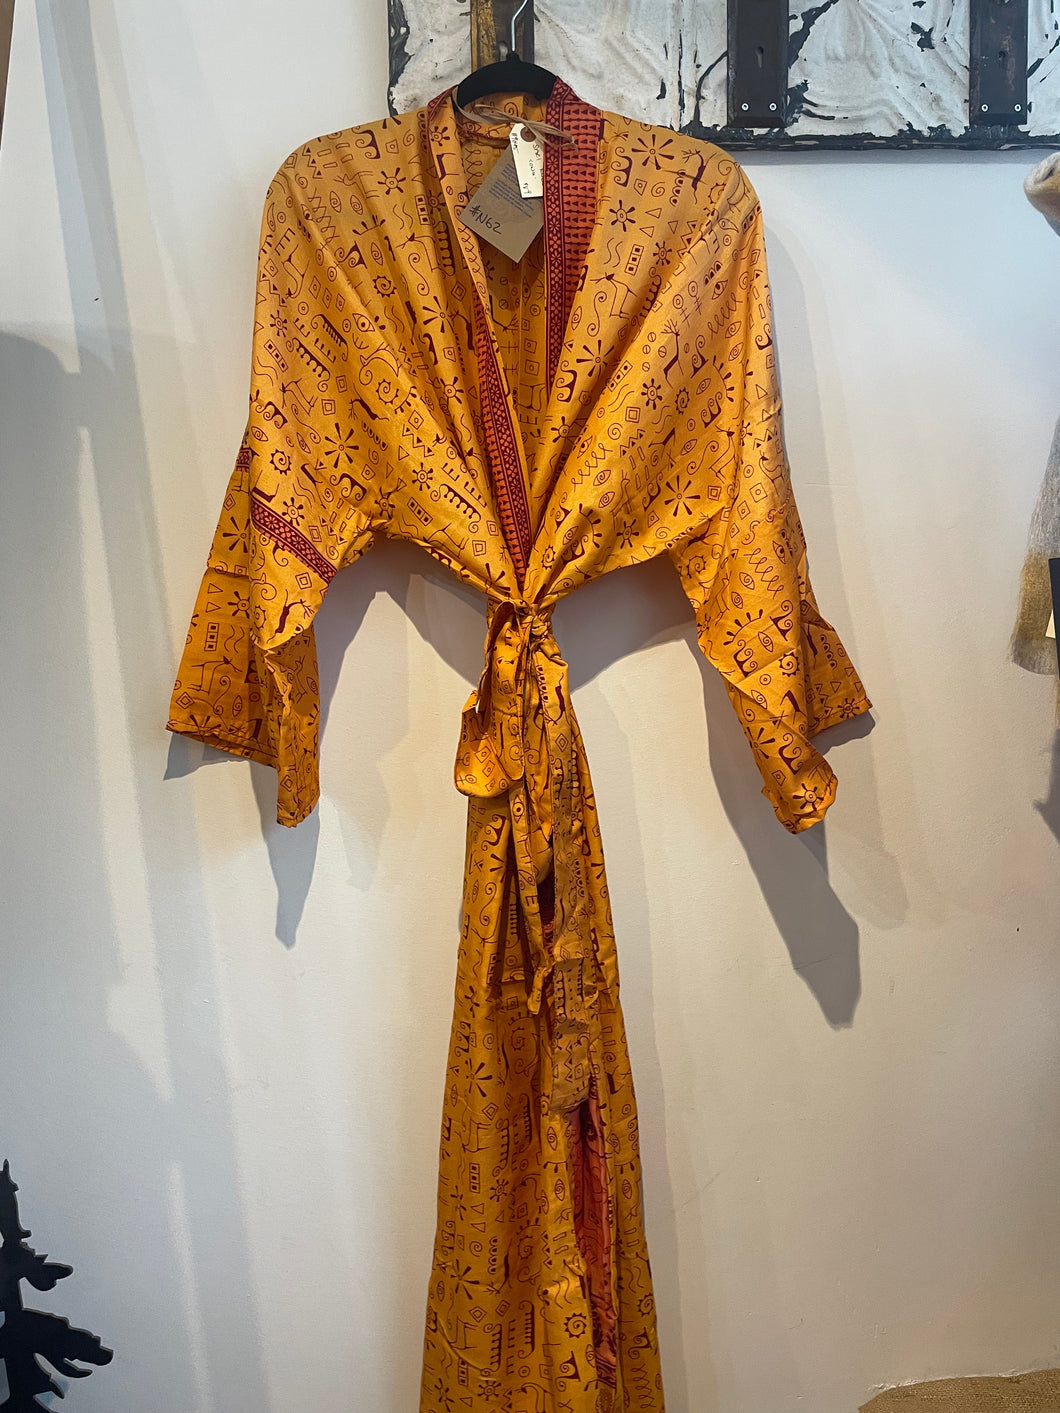 Upcycled Sari Robe - Long #N62